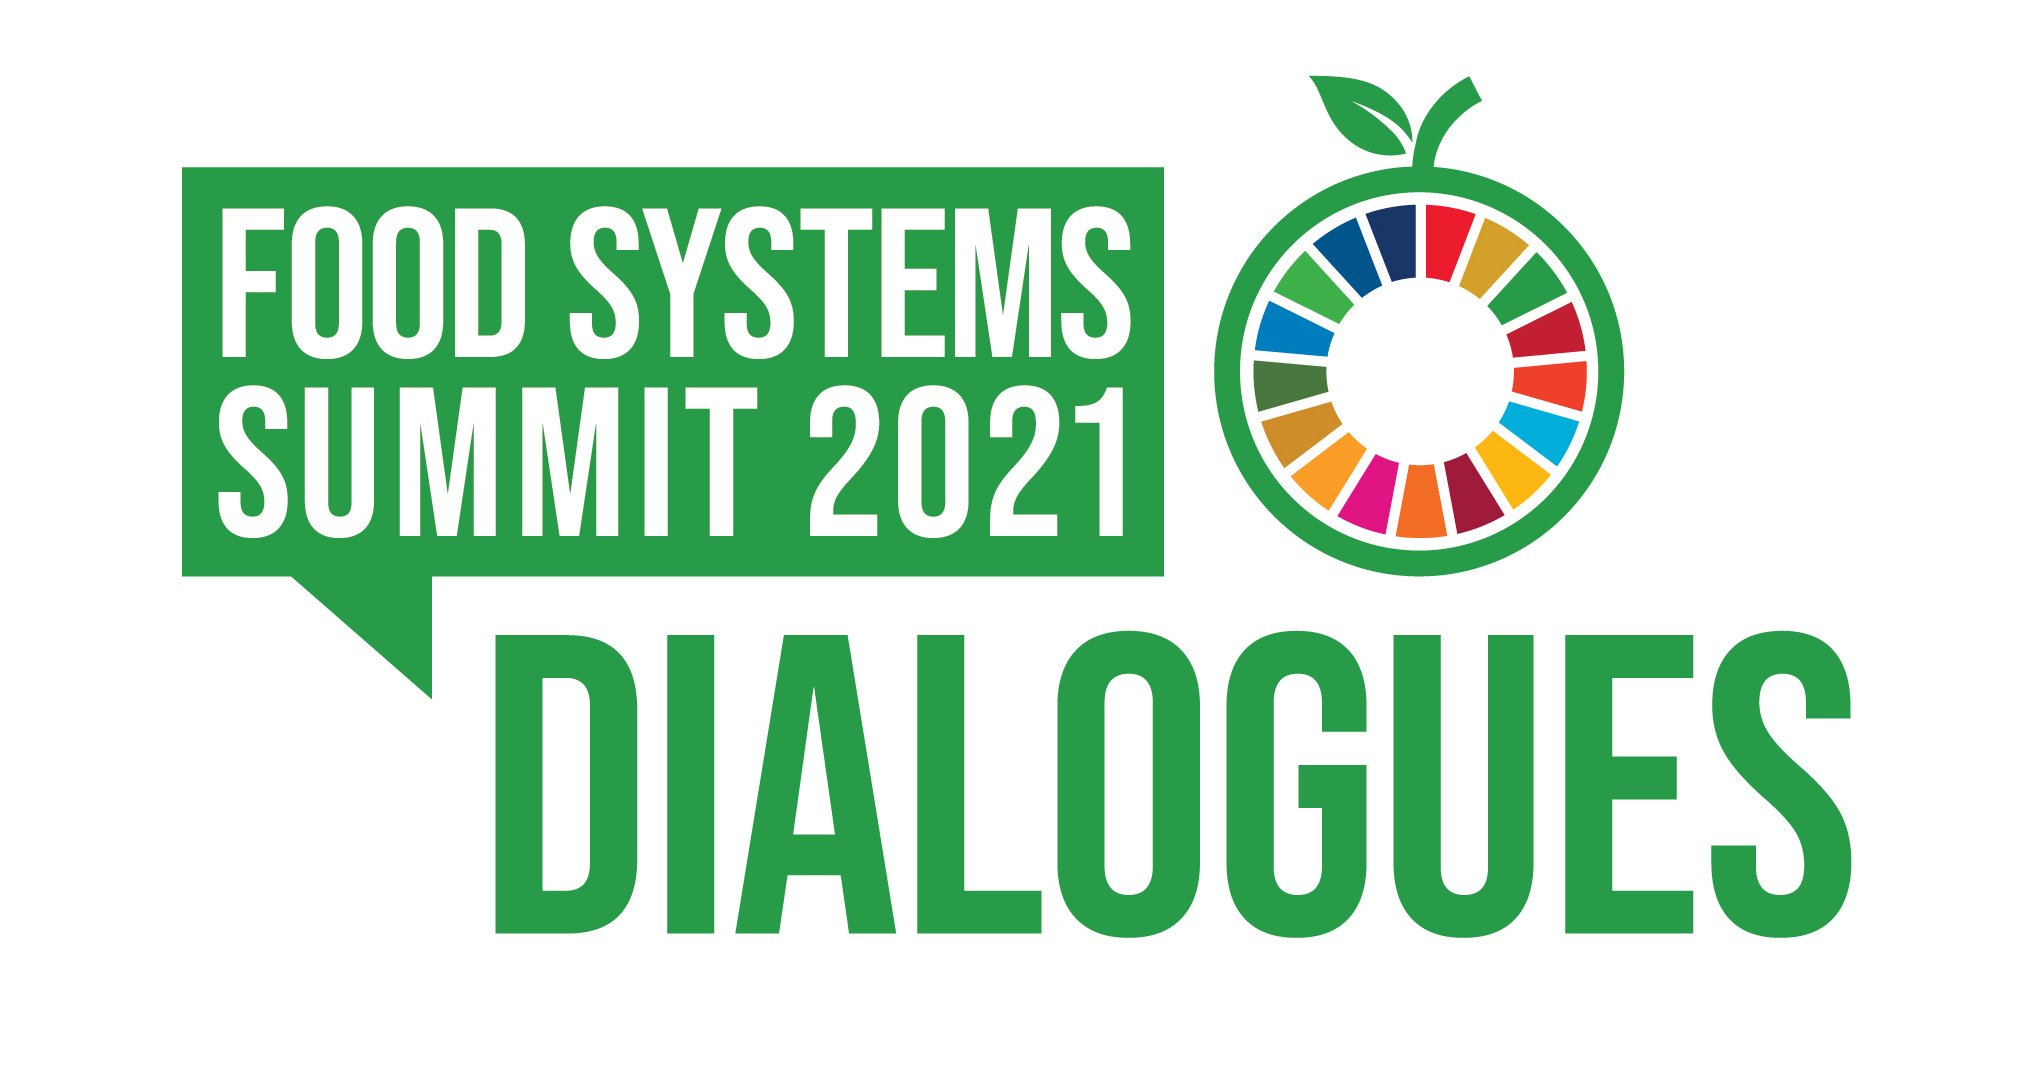 Food System summit logo